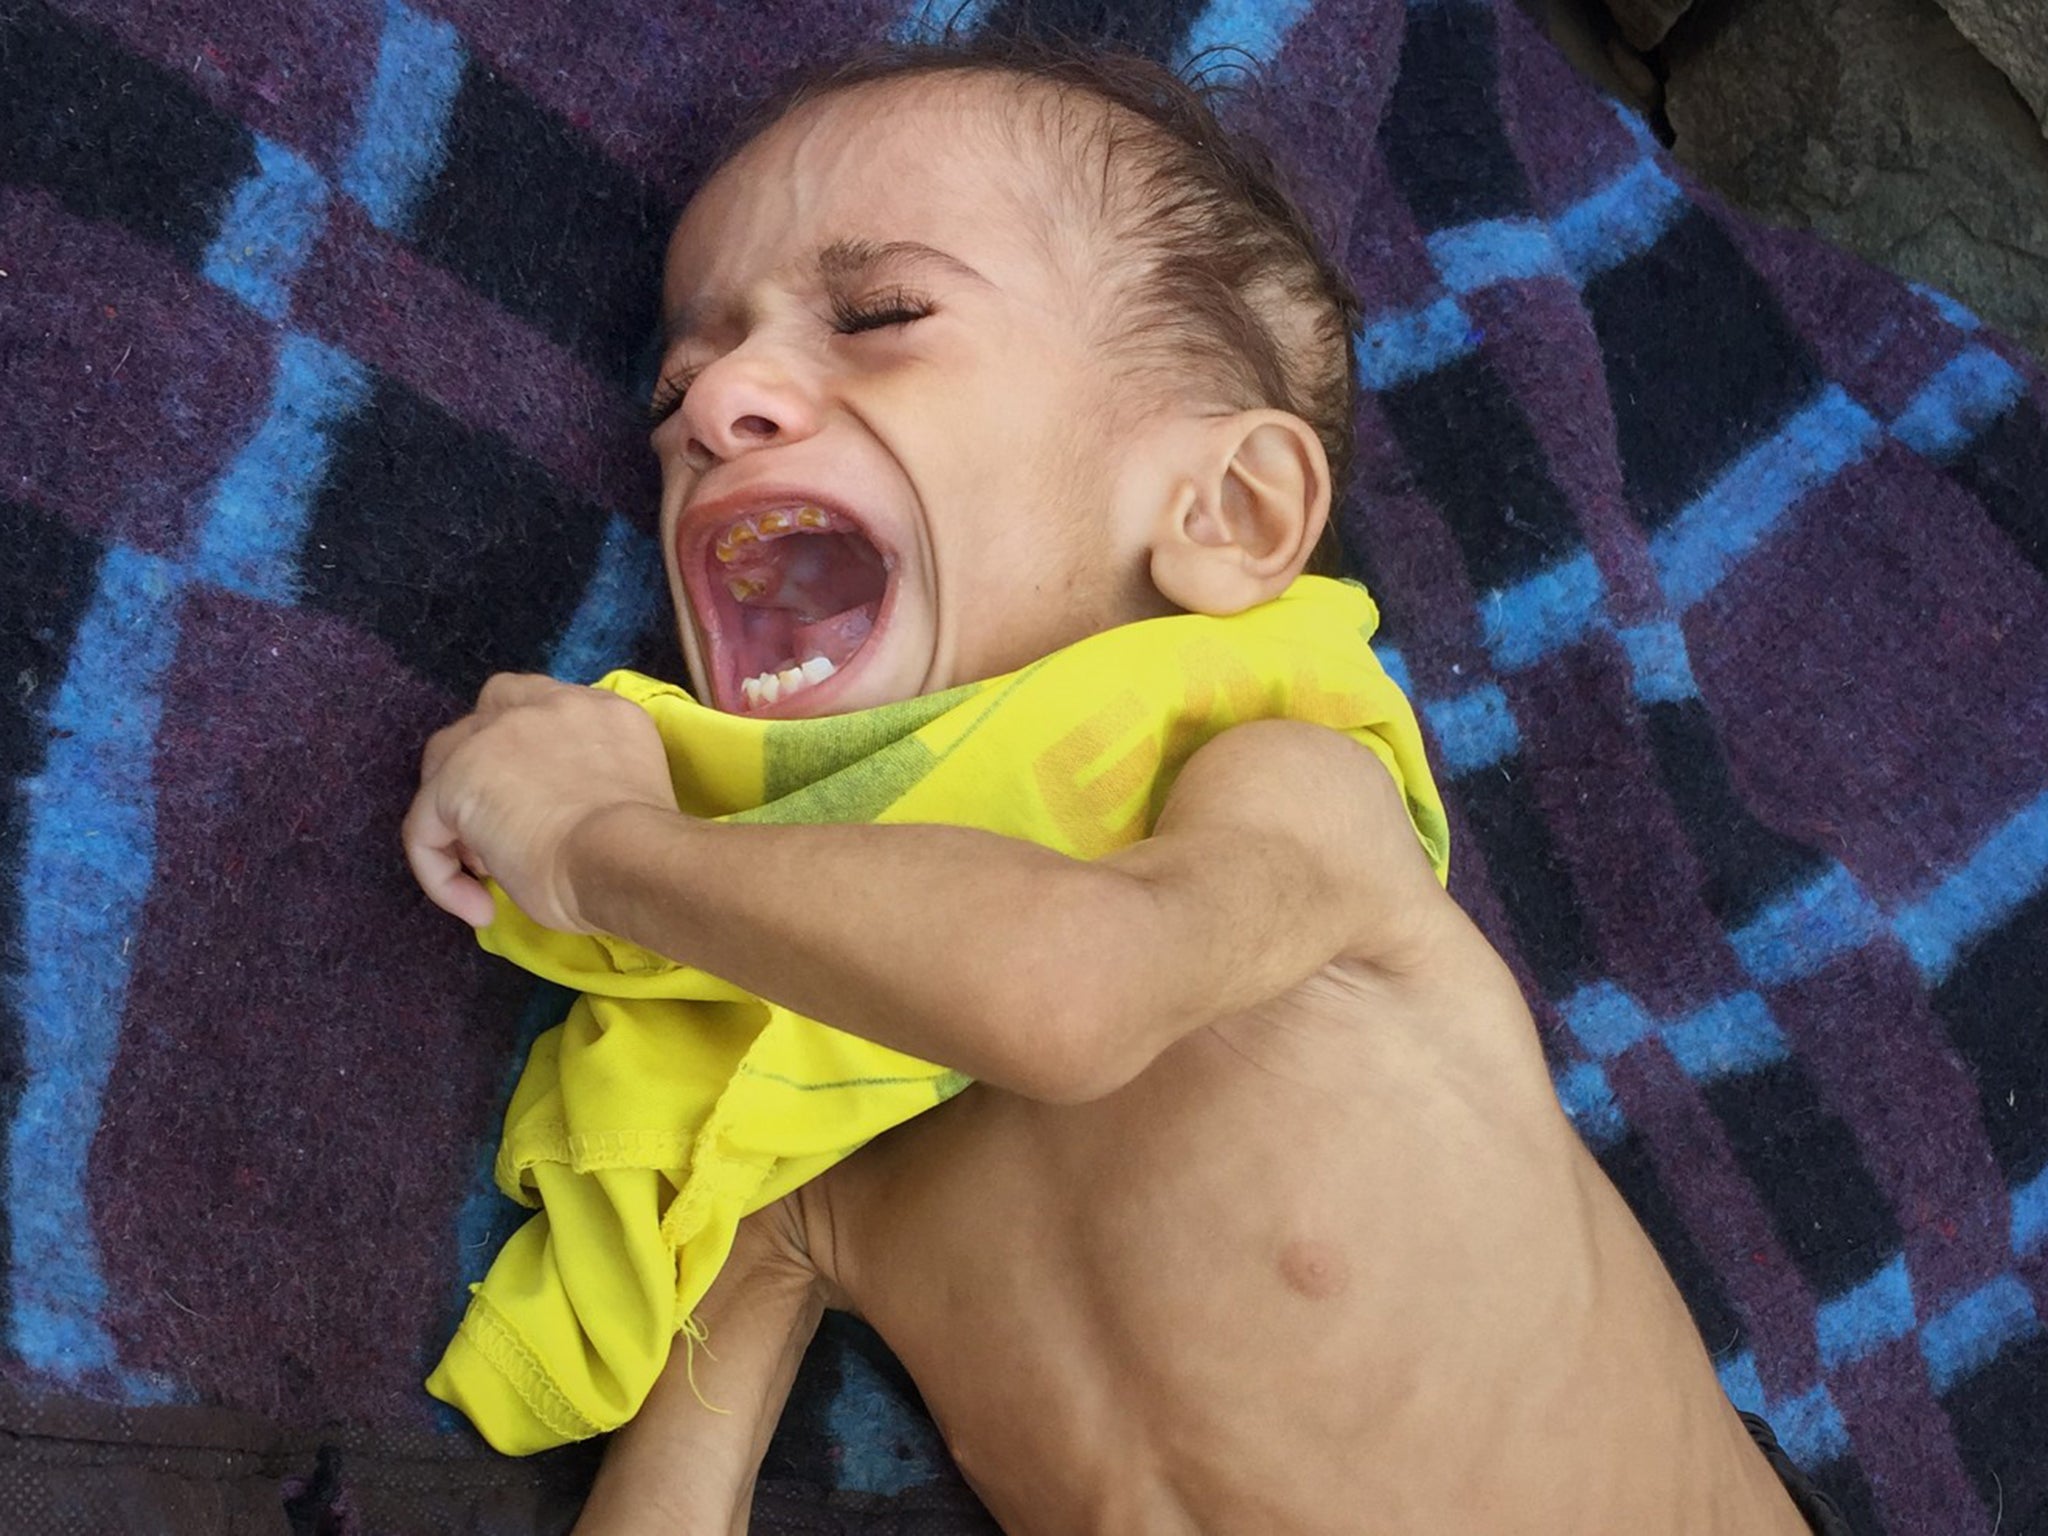 Osama Hassan suffers from severe hunger in Bani Saifan, Yemen